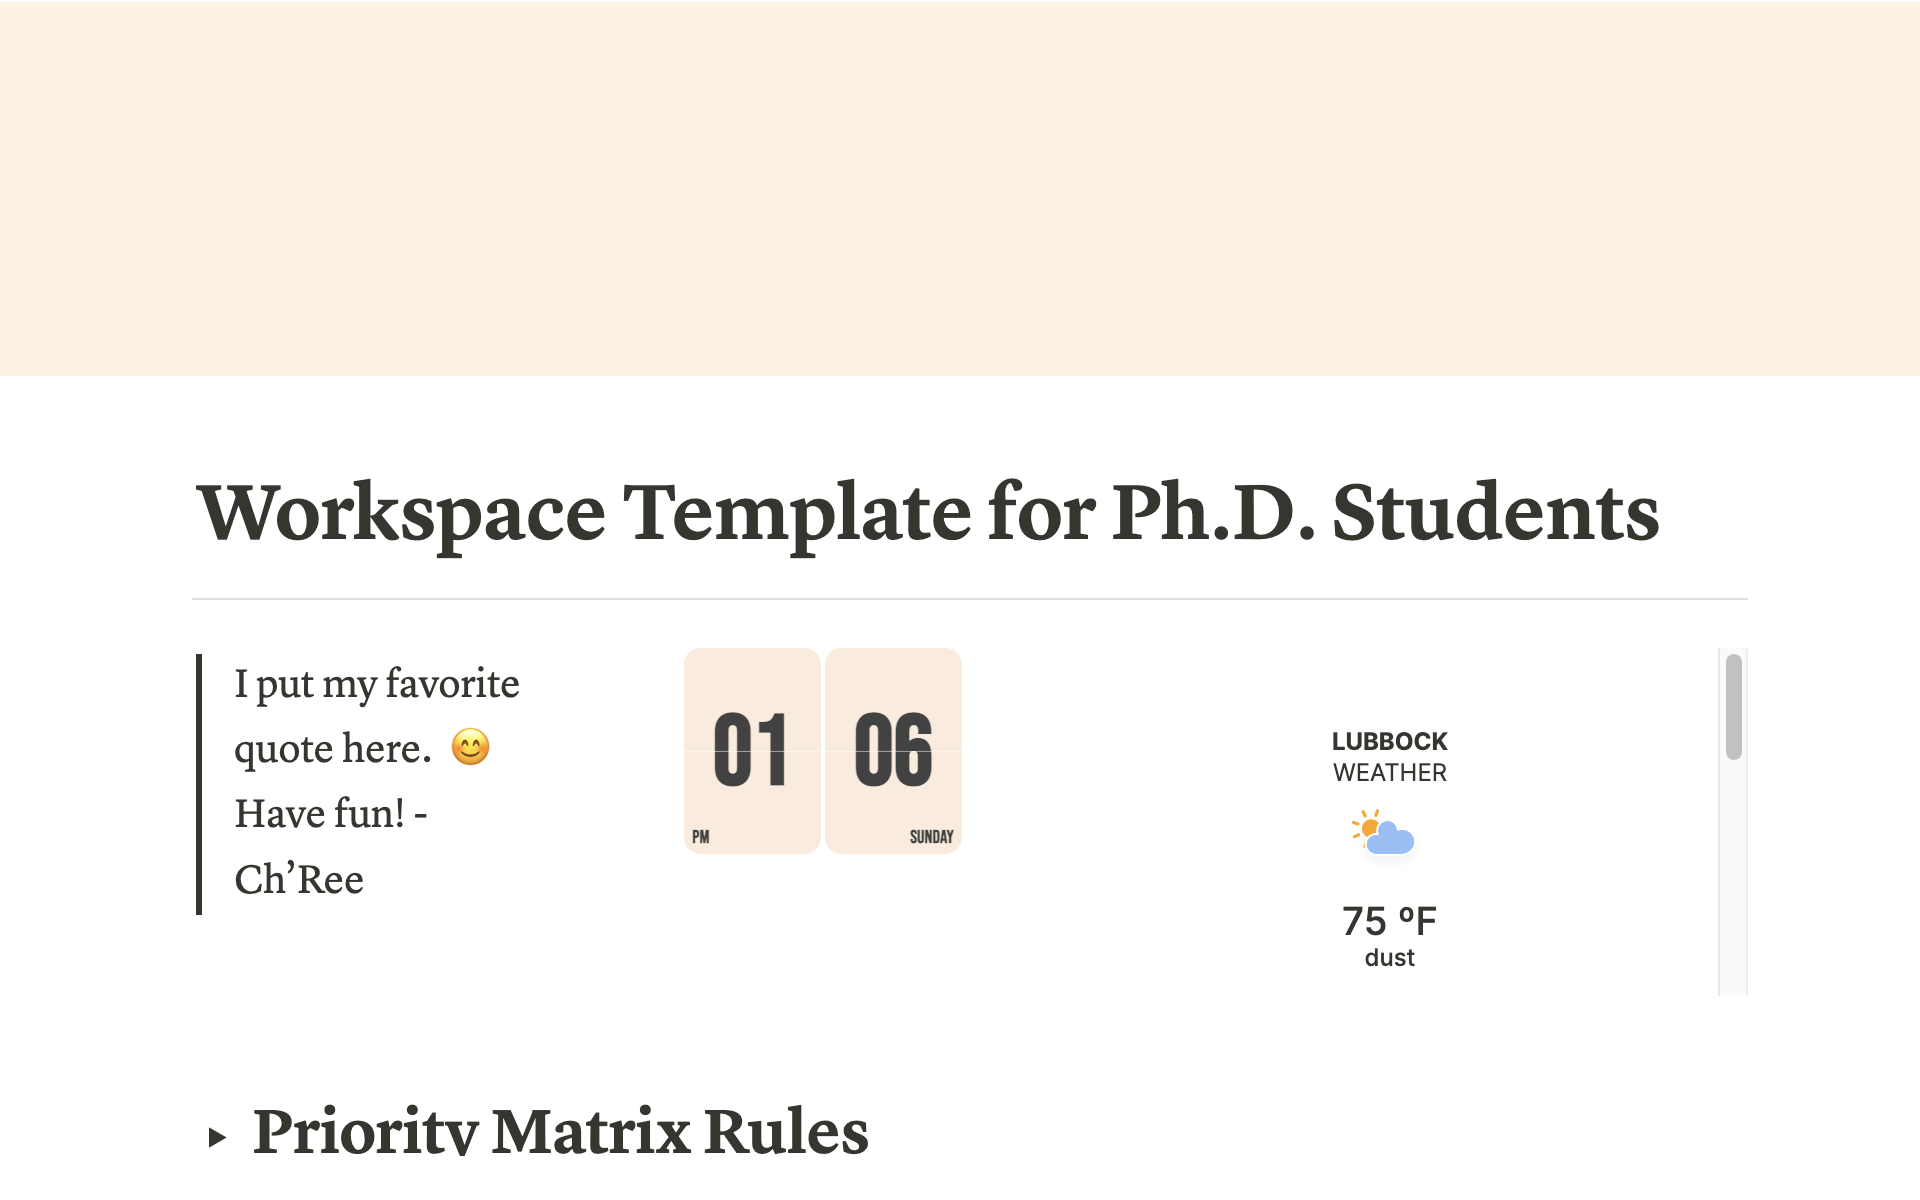 Workspace Template for Ph.D. Students님의 템플릿 미리보기